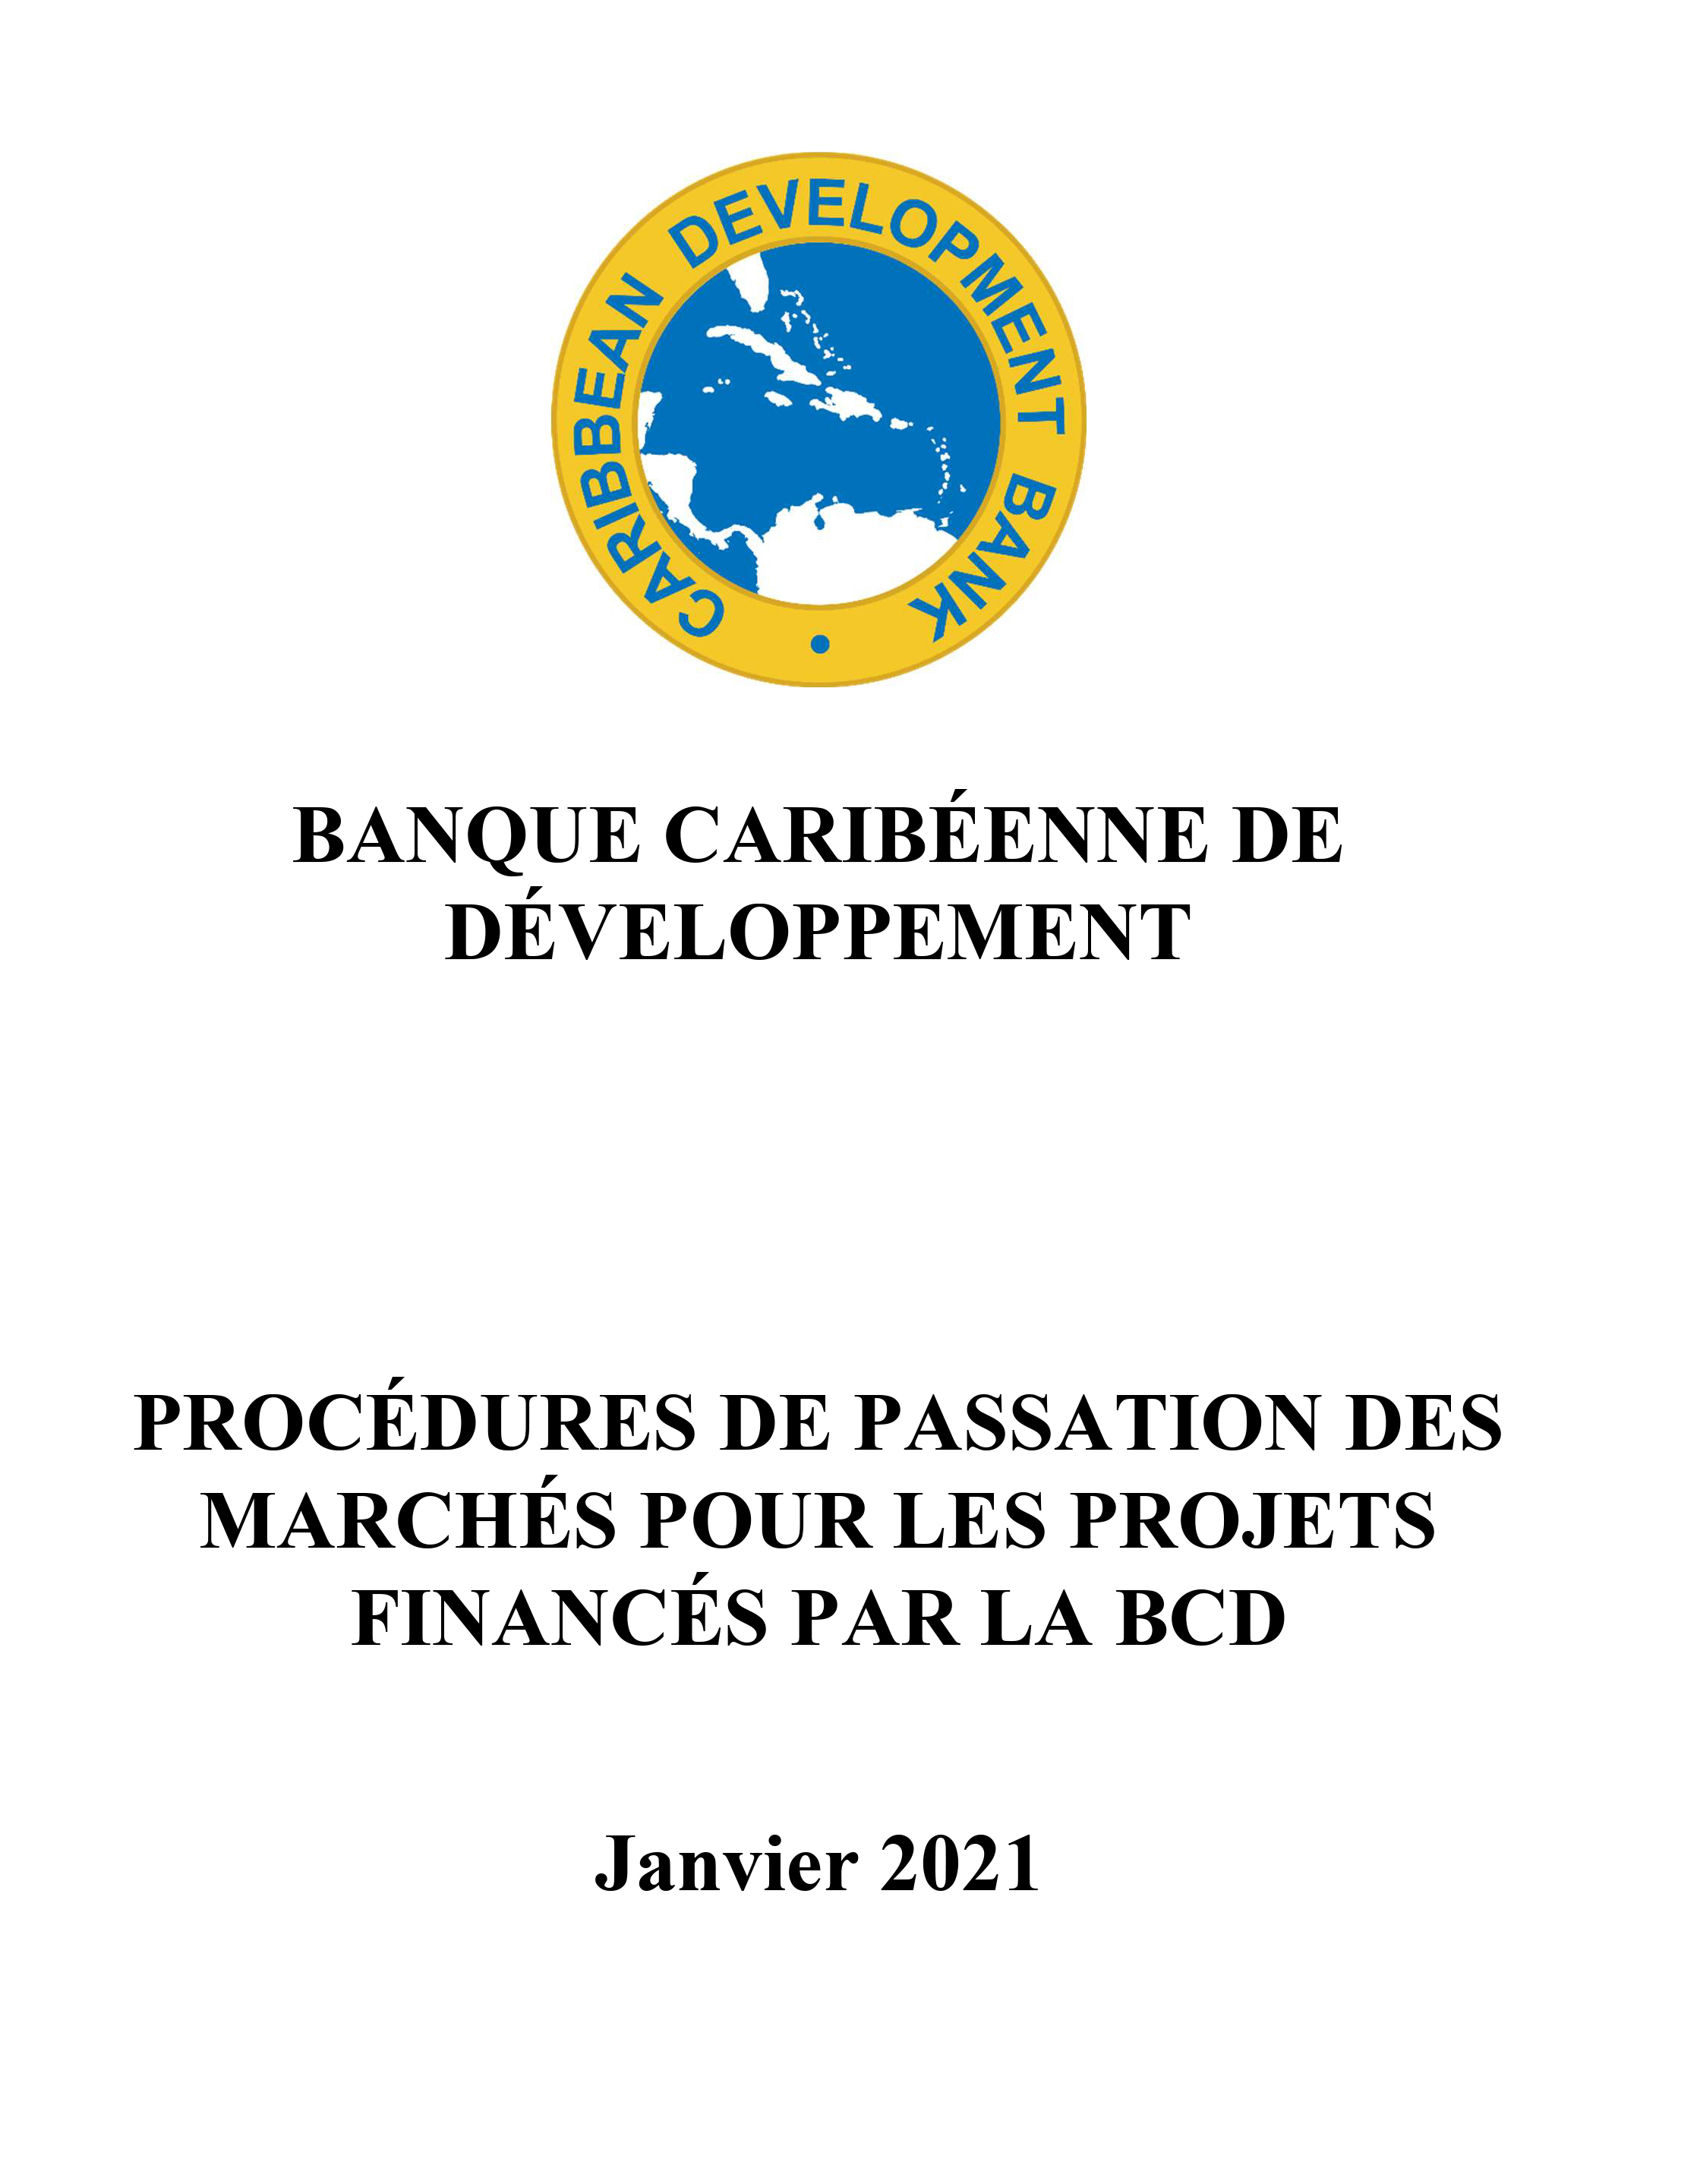 couverture montrant le logo CDB et le titre du document